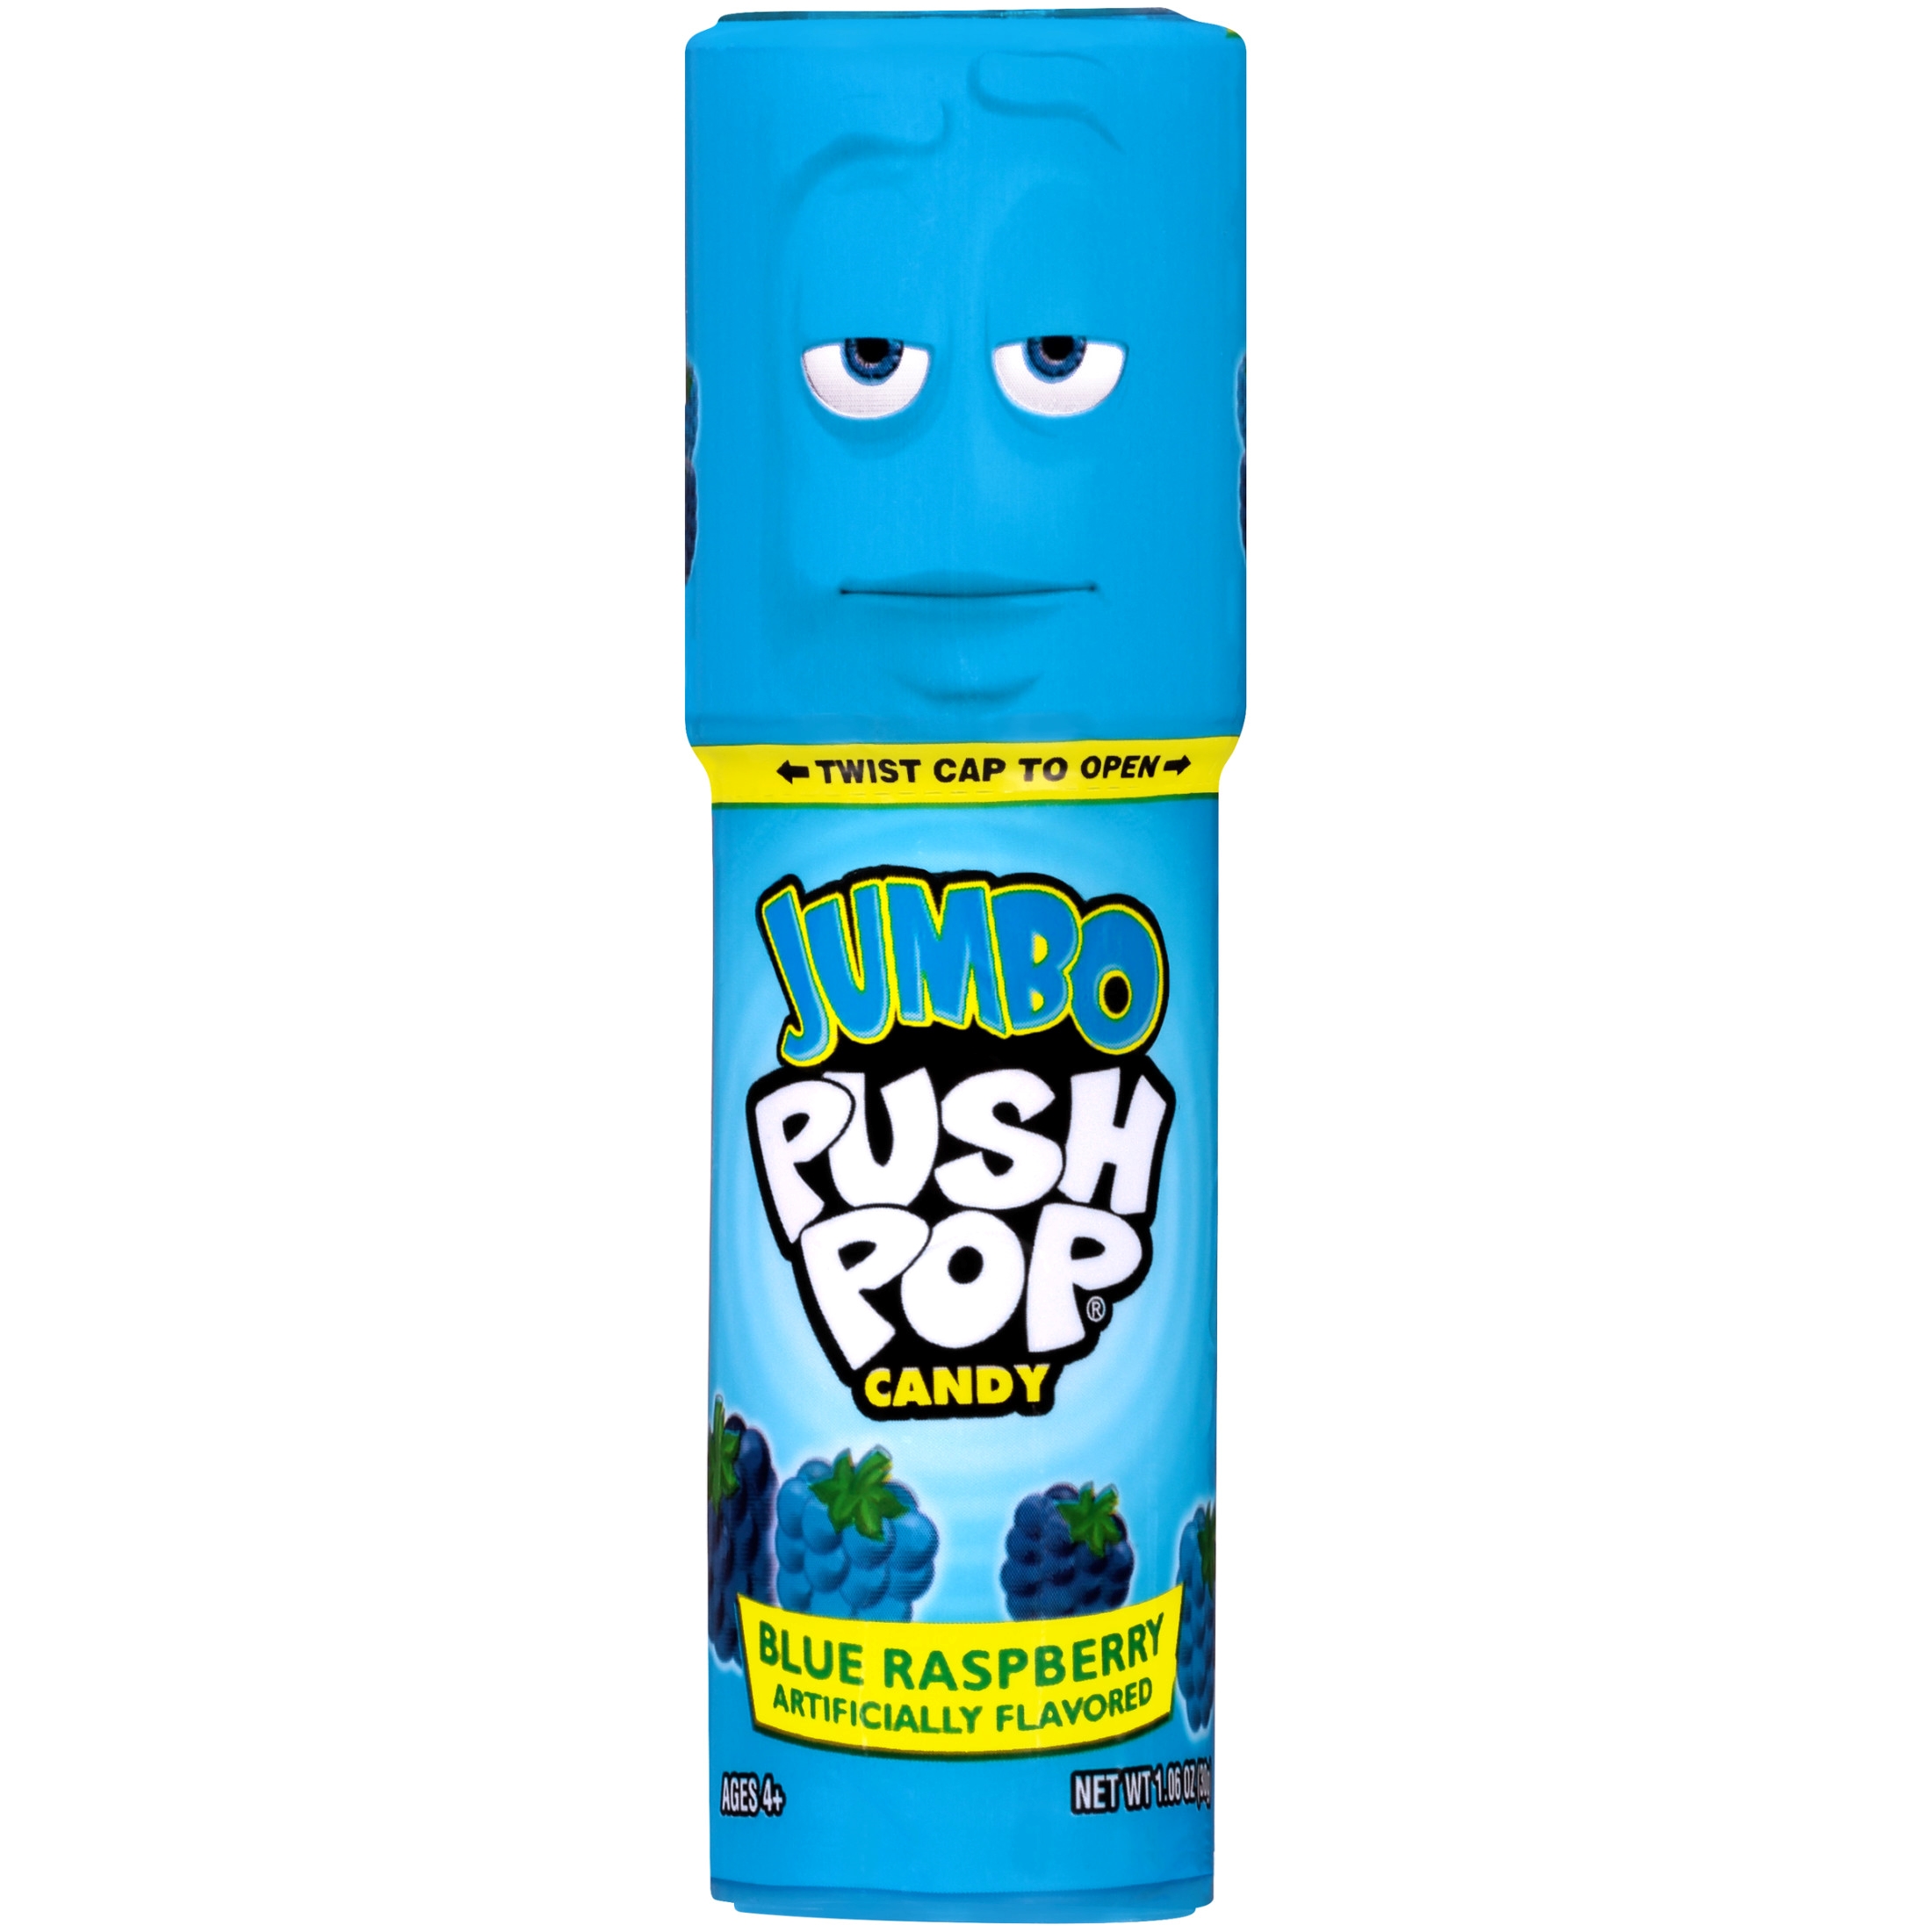 Jumbo Push Pop,Gluten-Free, Assorted Flavor Lollipop, 1.06 oz, 1 Count - image 3 of 8